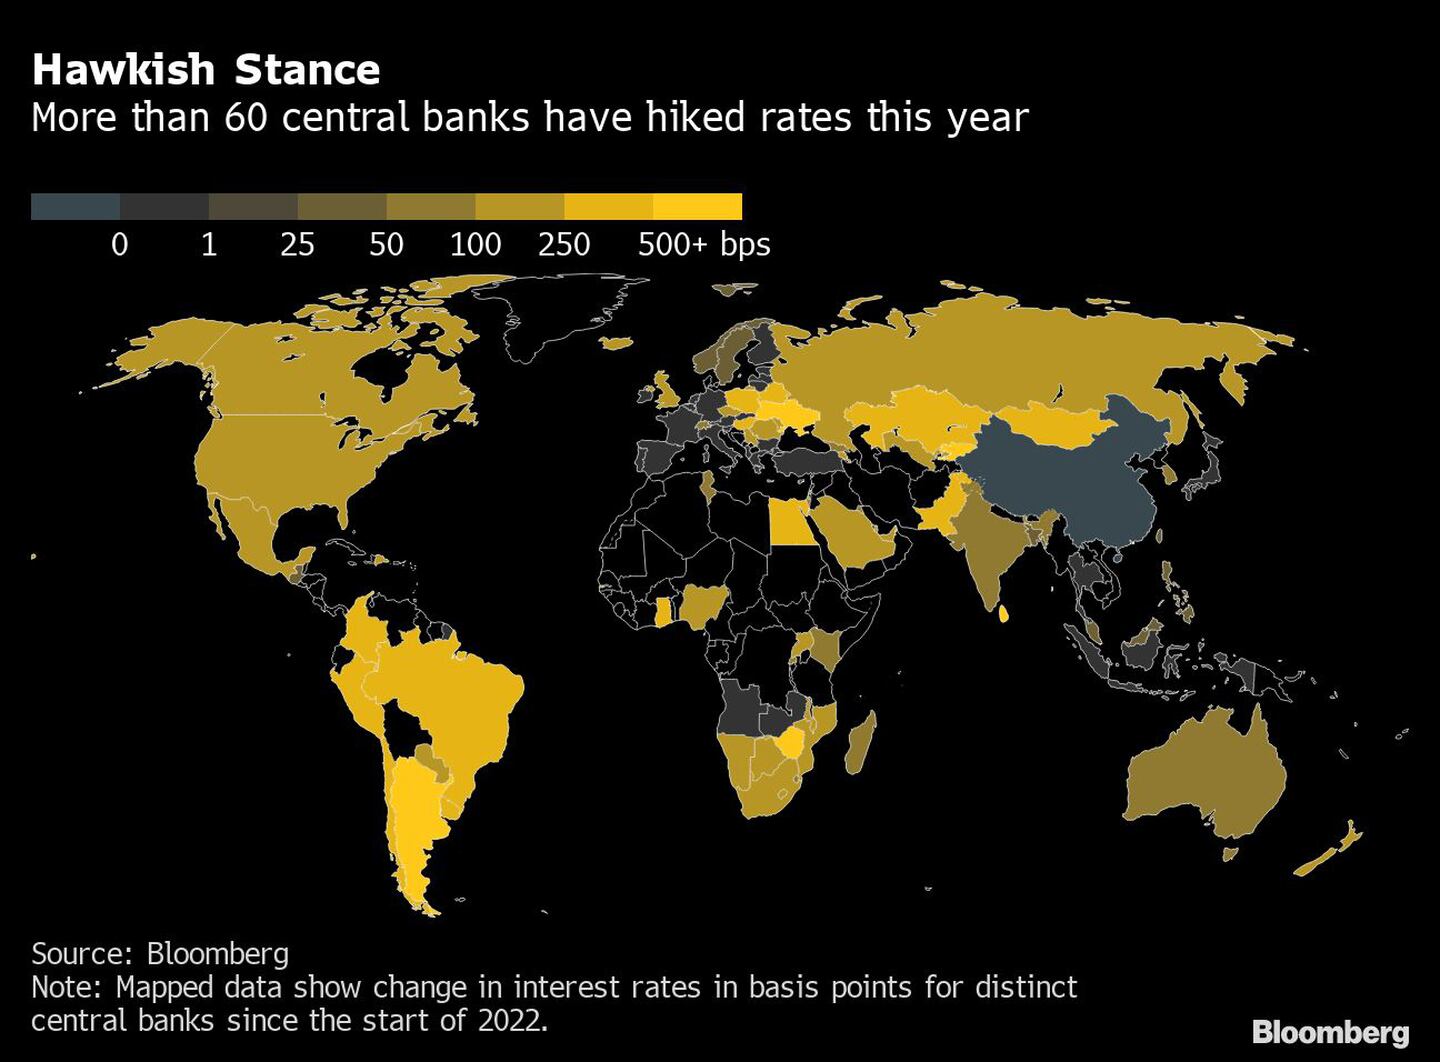 Postura “hawkish”
Más de 60 bancos centrales han subido los tipos este añodfd